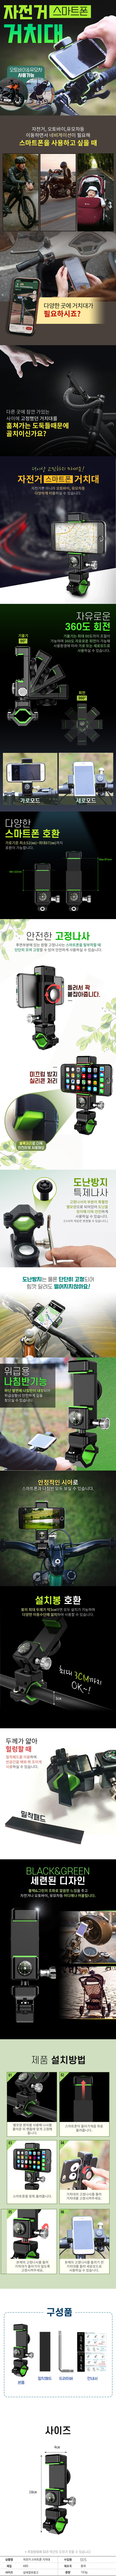 Bicycle_Smartphone_cradle.jpg